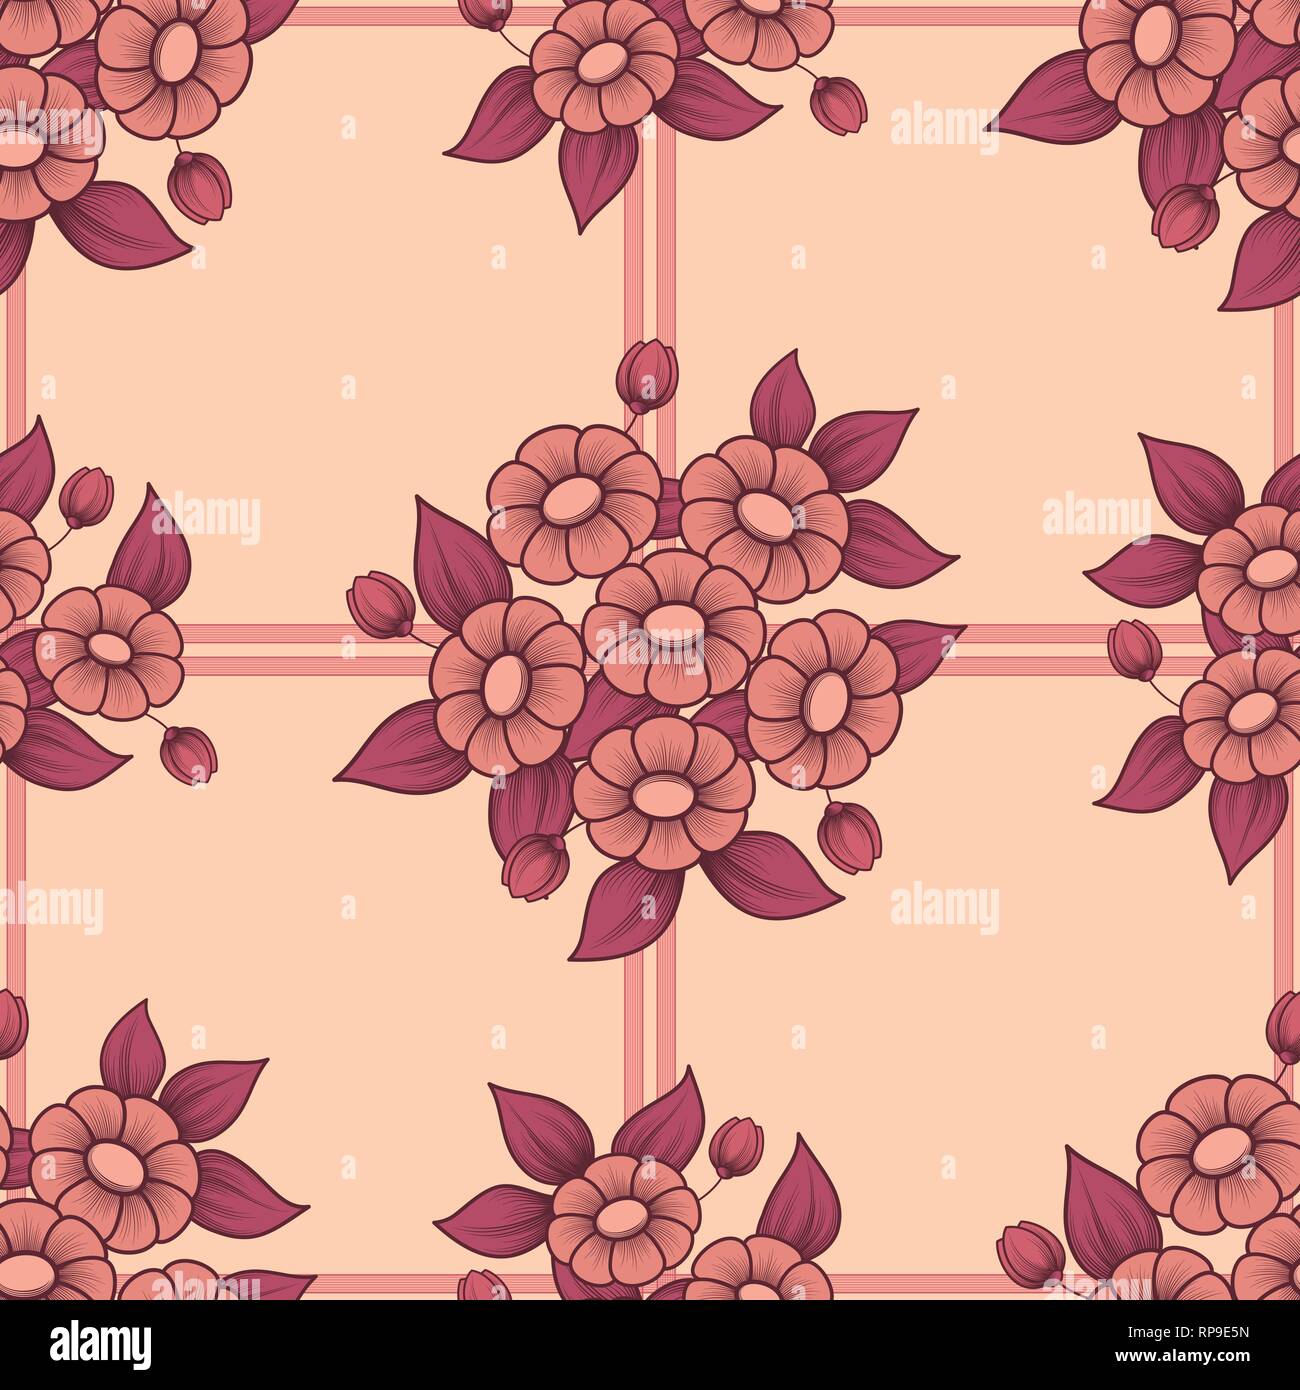 Floral background transparent couleur corail avec des bouquets de marguerites Illustration de Vecteur